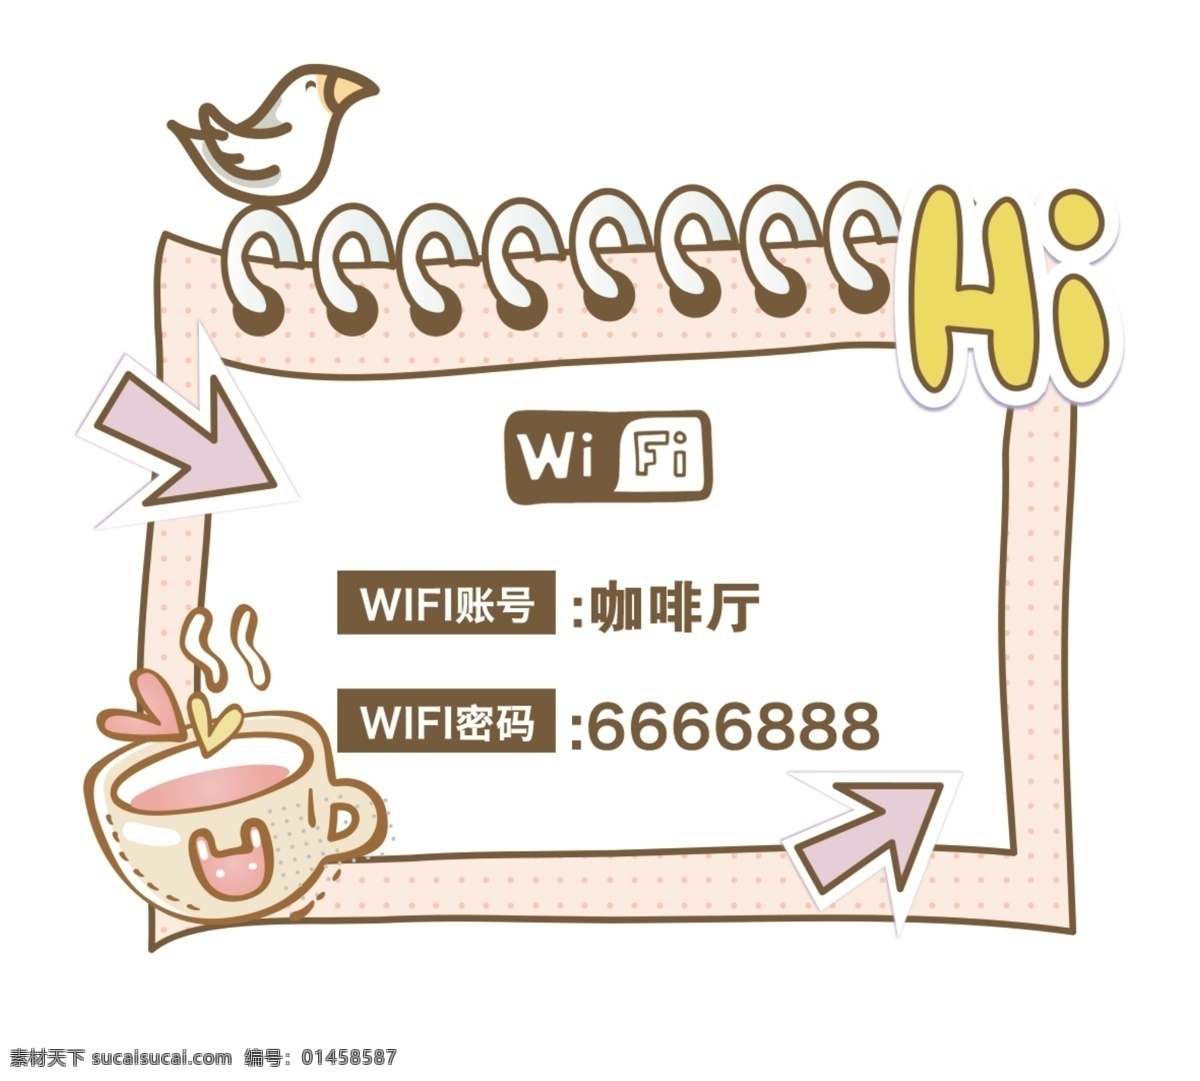 温馨提示 安全提示 提示标语 提示标牌 温馨提示标牌 温馨提示标语 wifi wifi密码